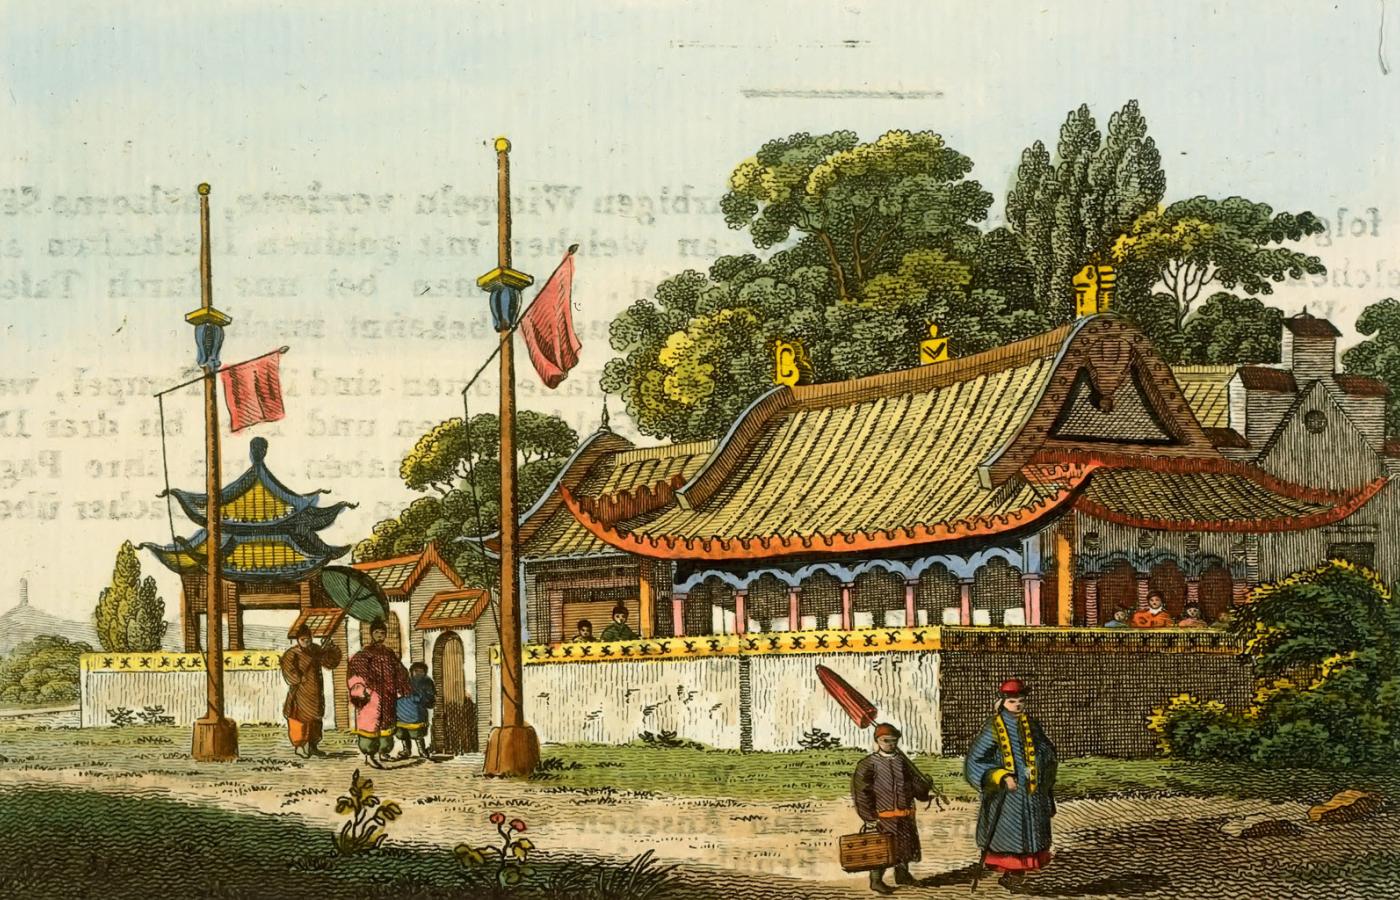 Klasyczny dom mandaryna od zewnątrz. Ilustracja z 1813 r.